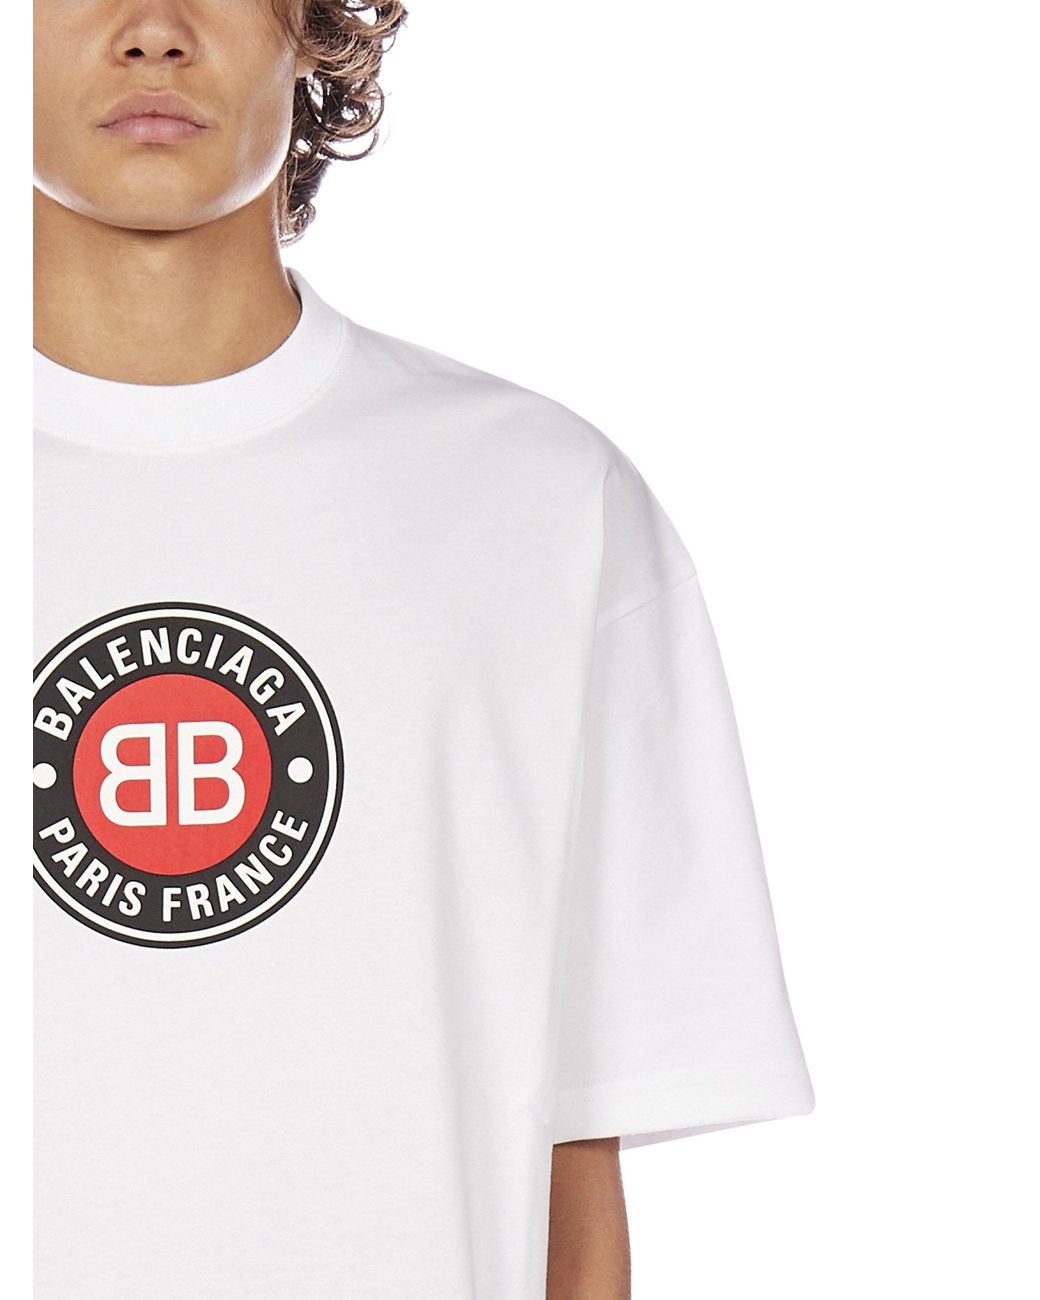 Balenciaga Paris France Print T-shirt in White for Men | Lyst